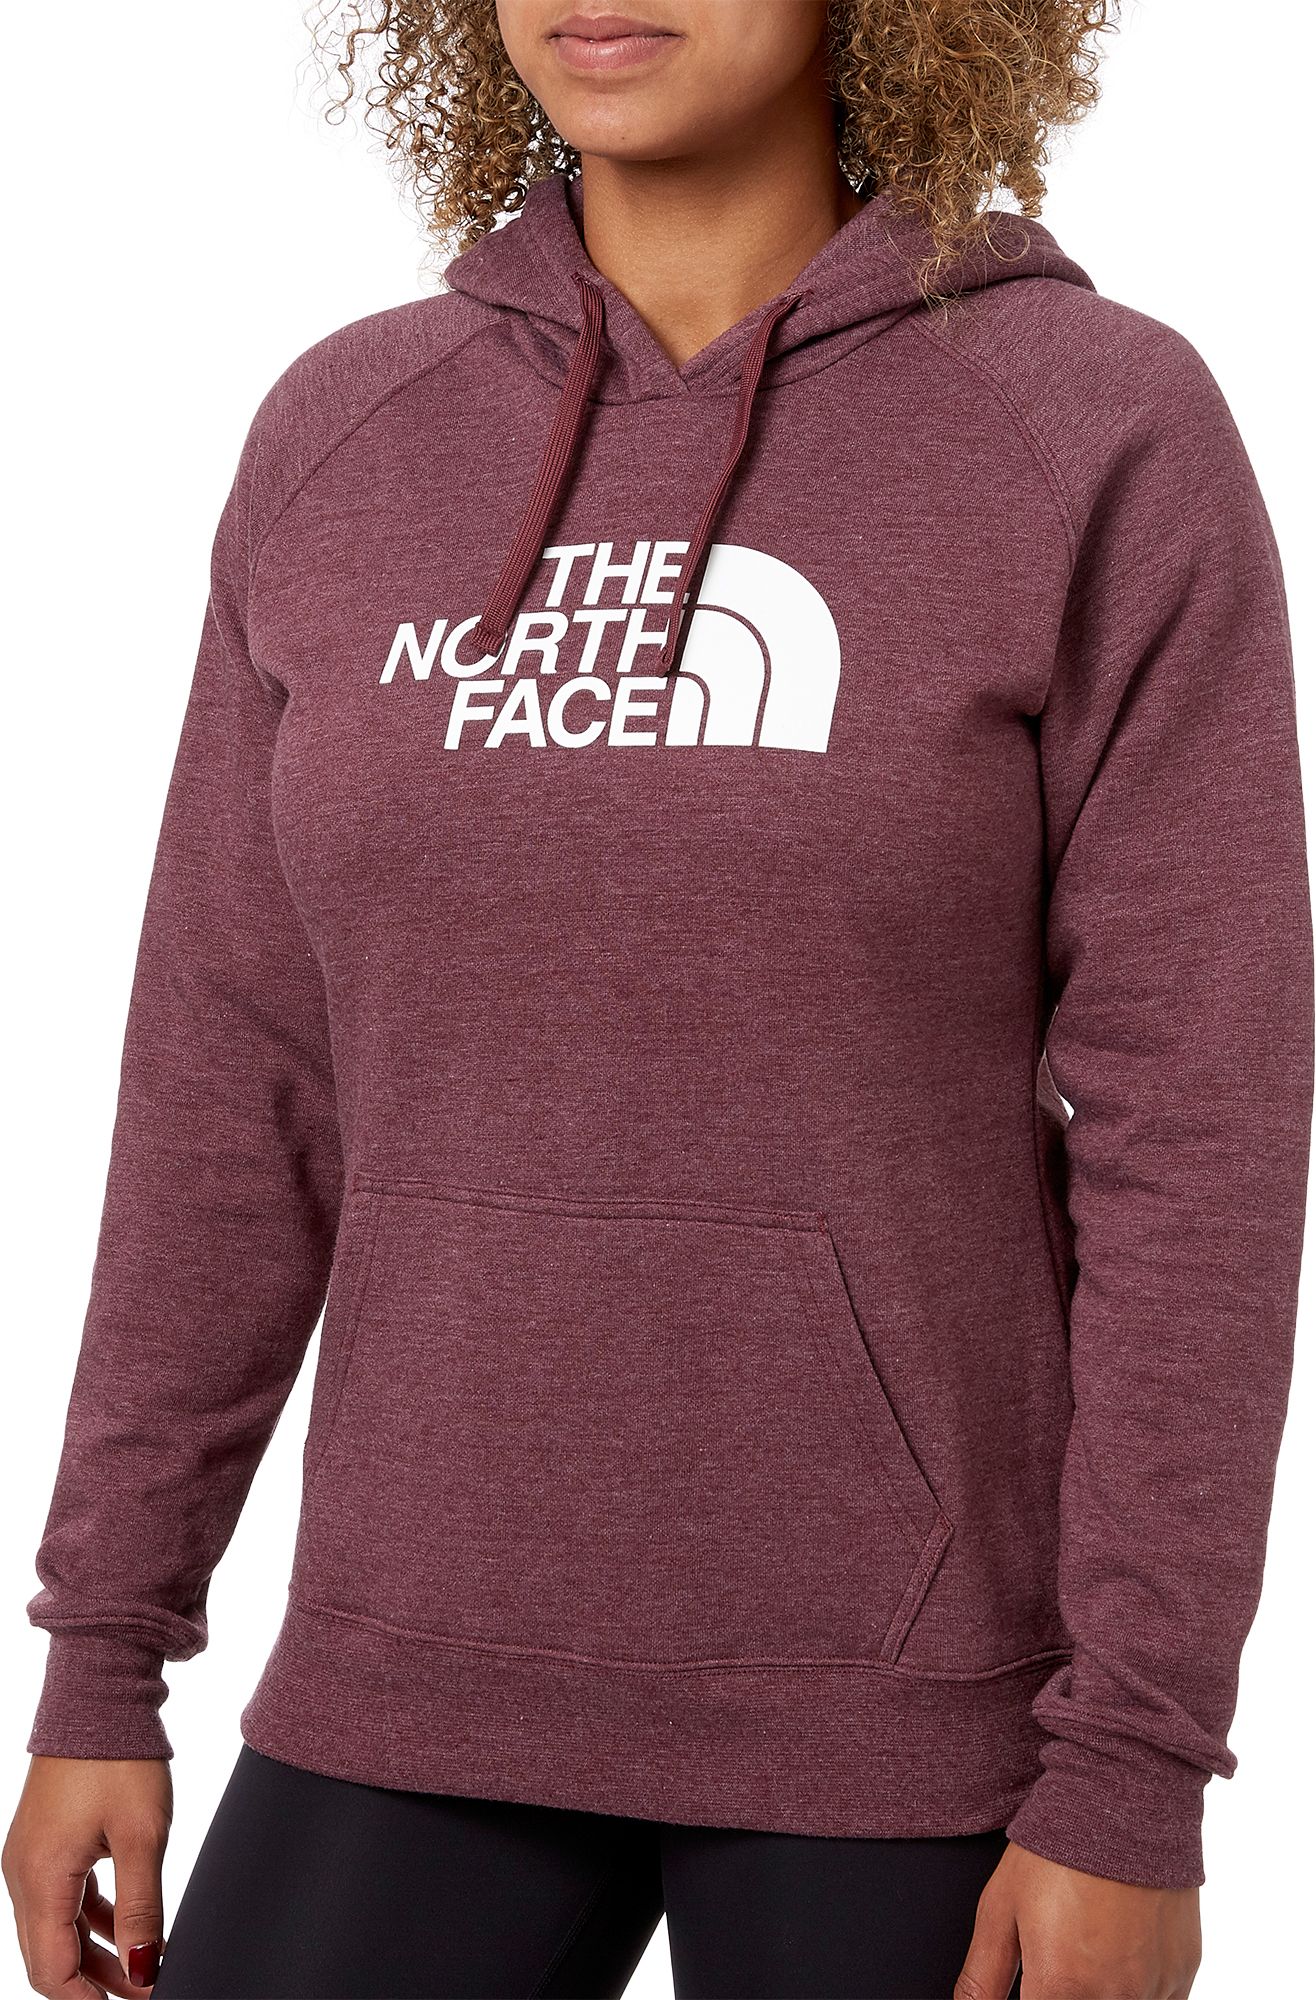 north face hoodie burgundy